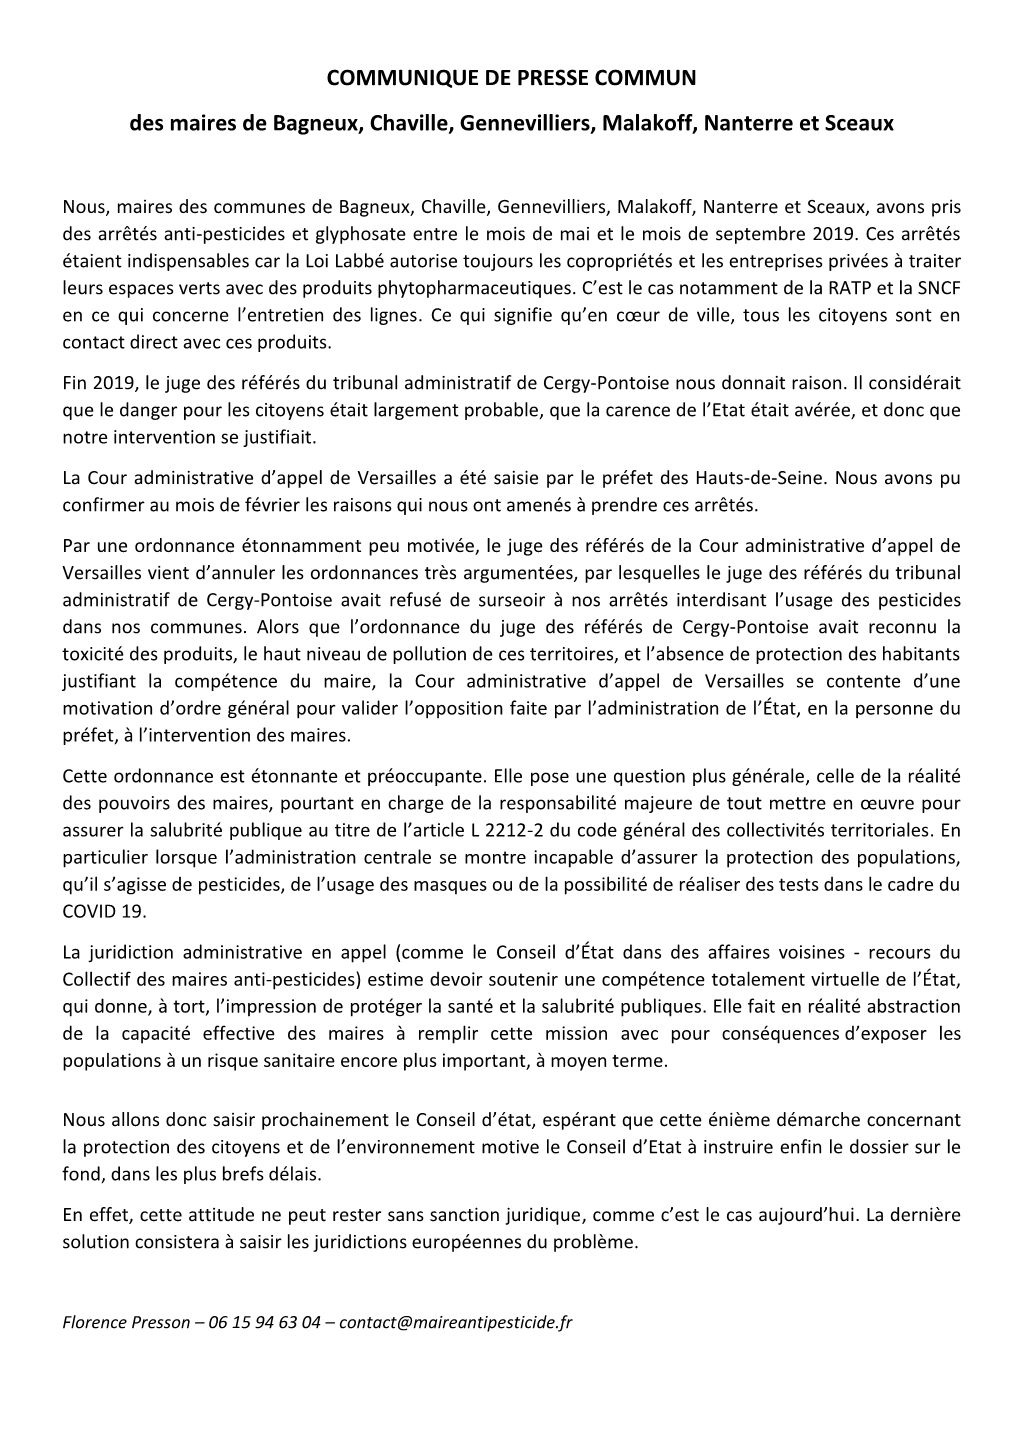 COMMUNIQUE DE PRESSE COMMUN Des Maires De Bagneux, Chaville, Gennevilliers, Malakoff, Nanterre Et Sceaux